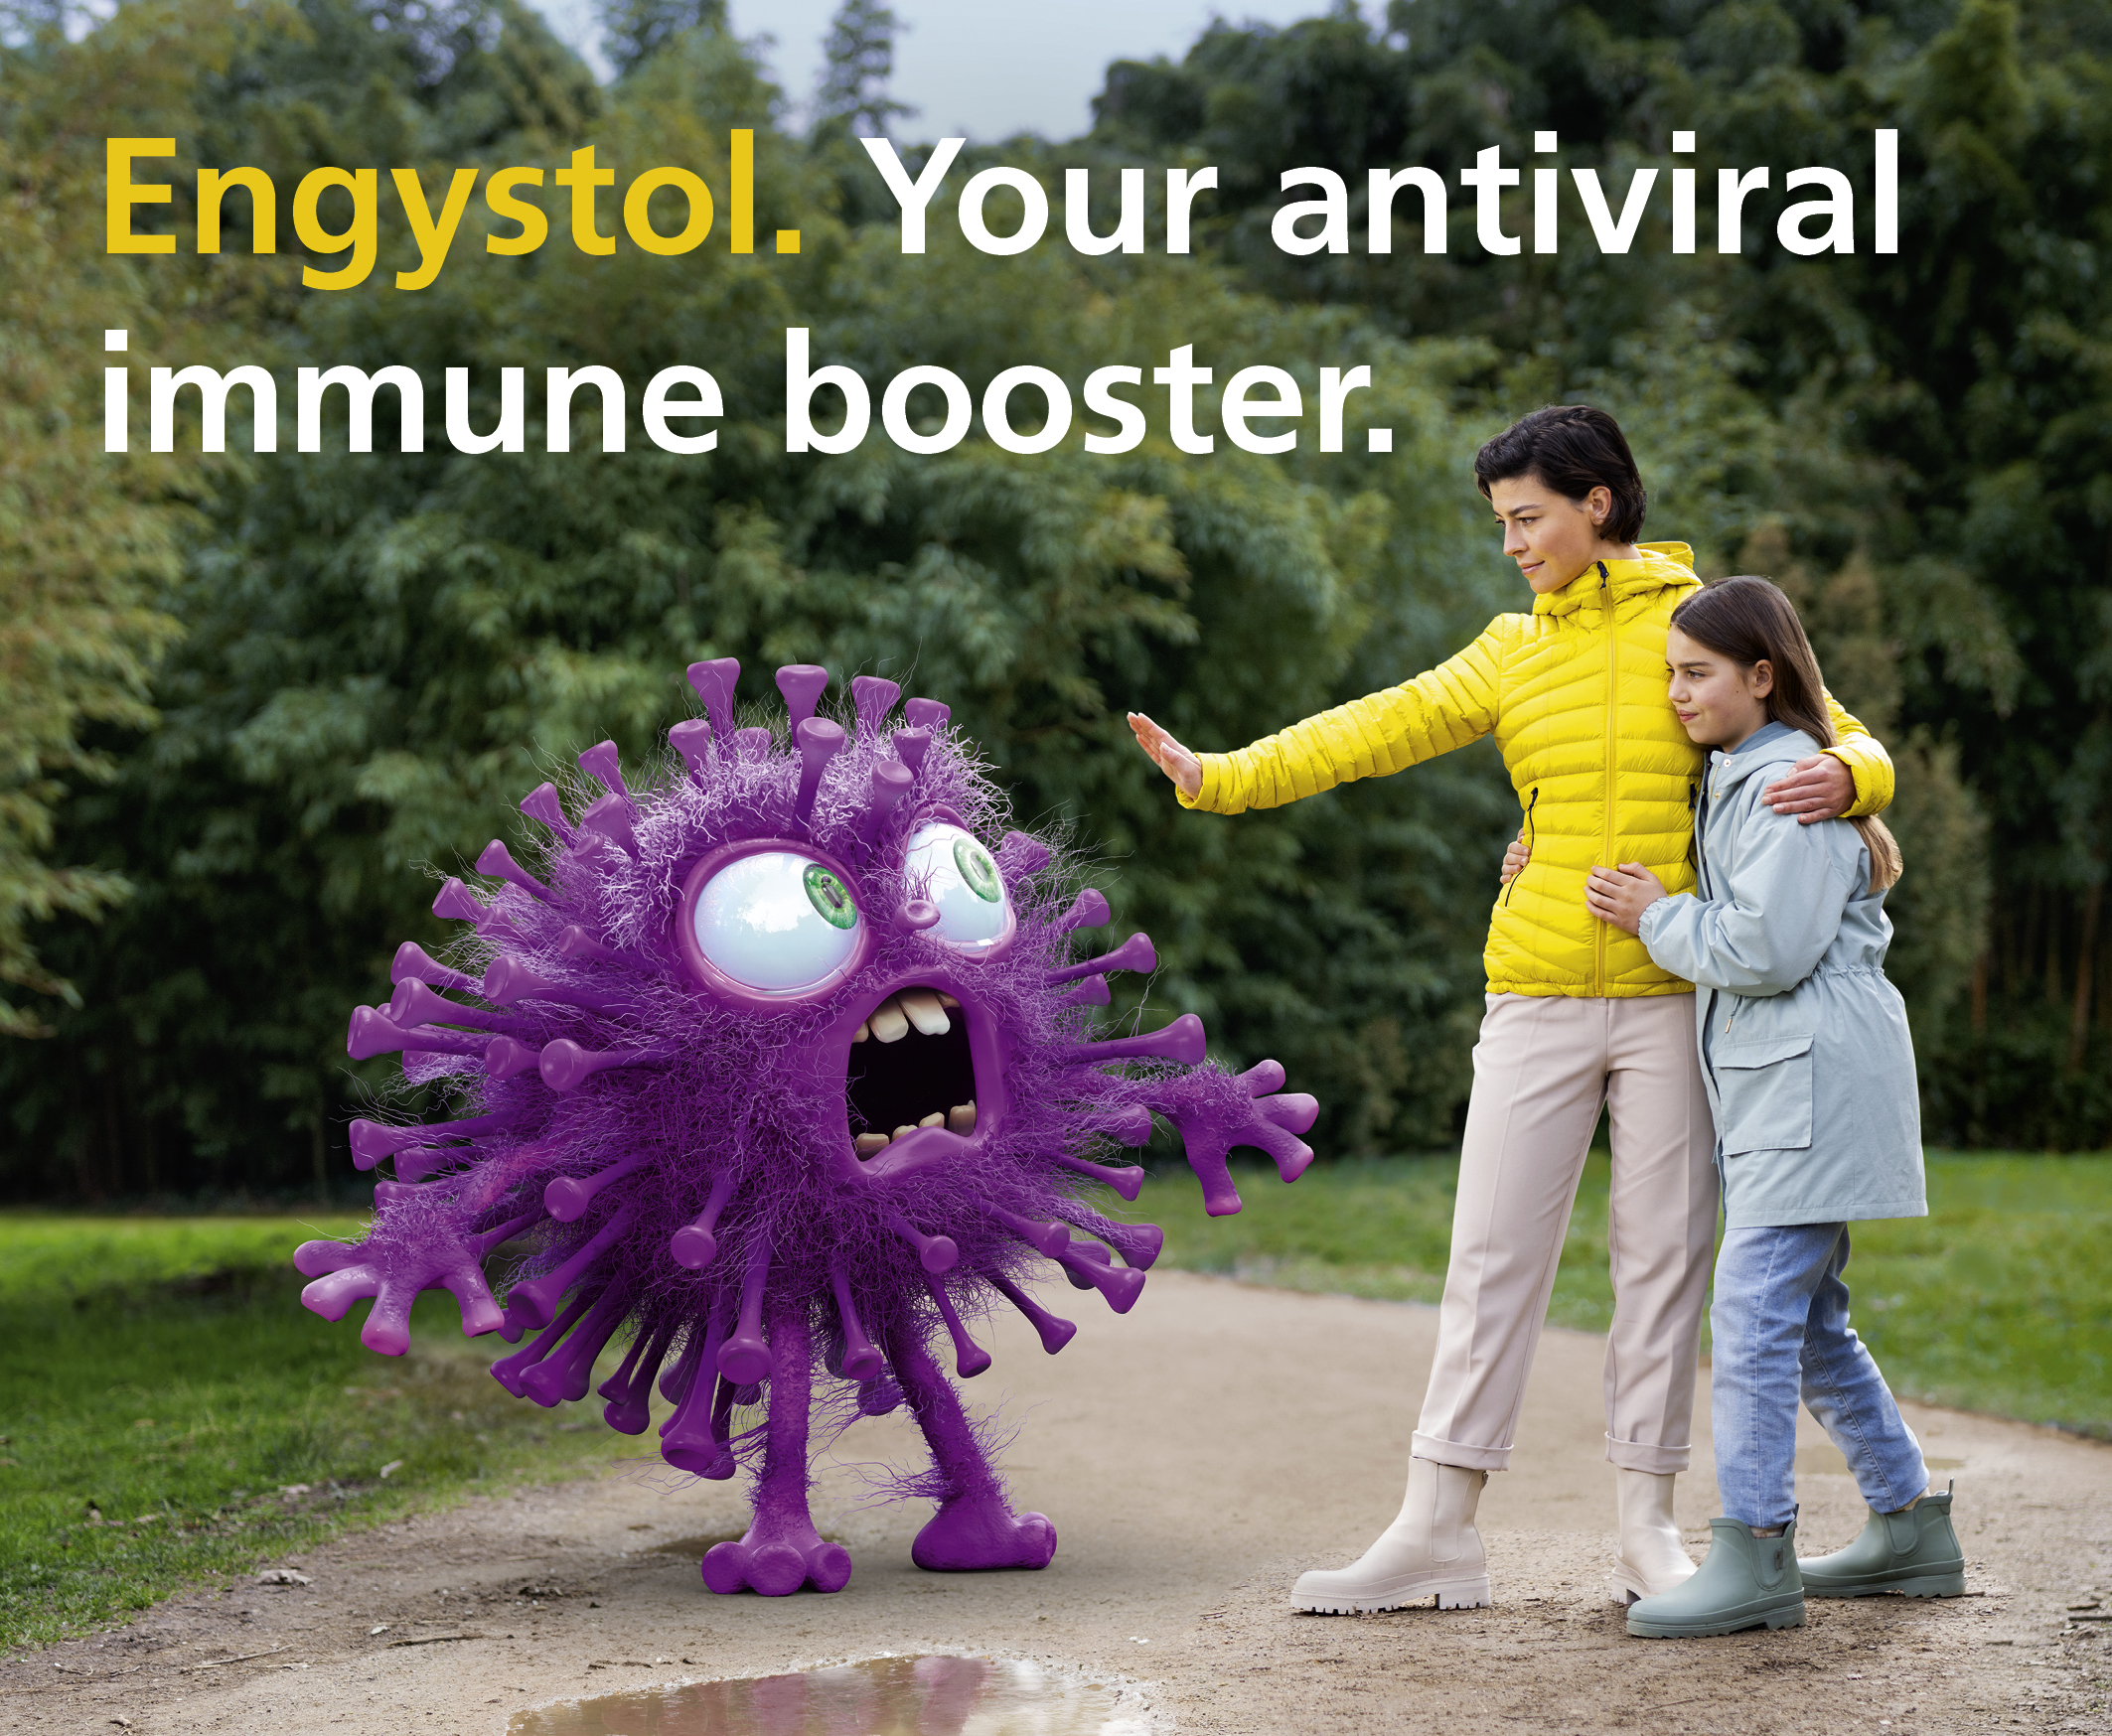 Globale Engystol-Kampagne zur Stärkung des Immunsystems.